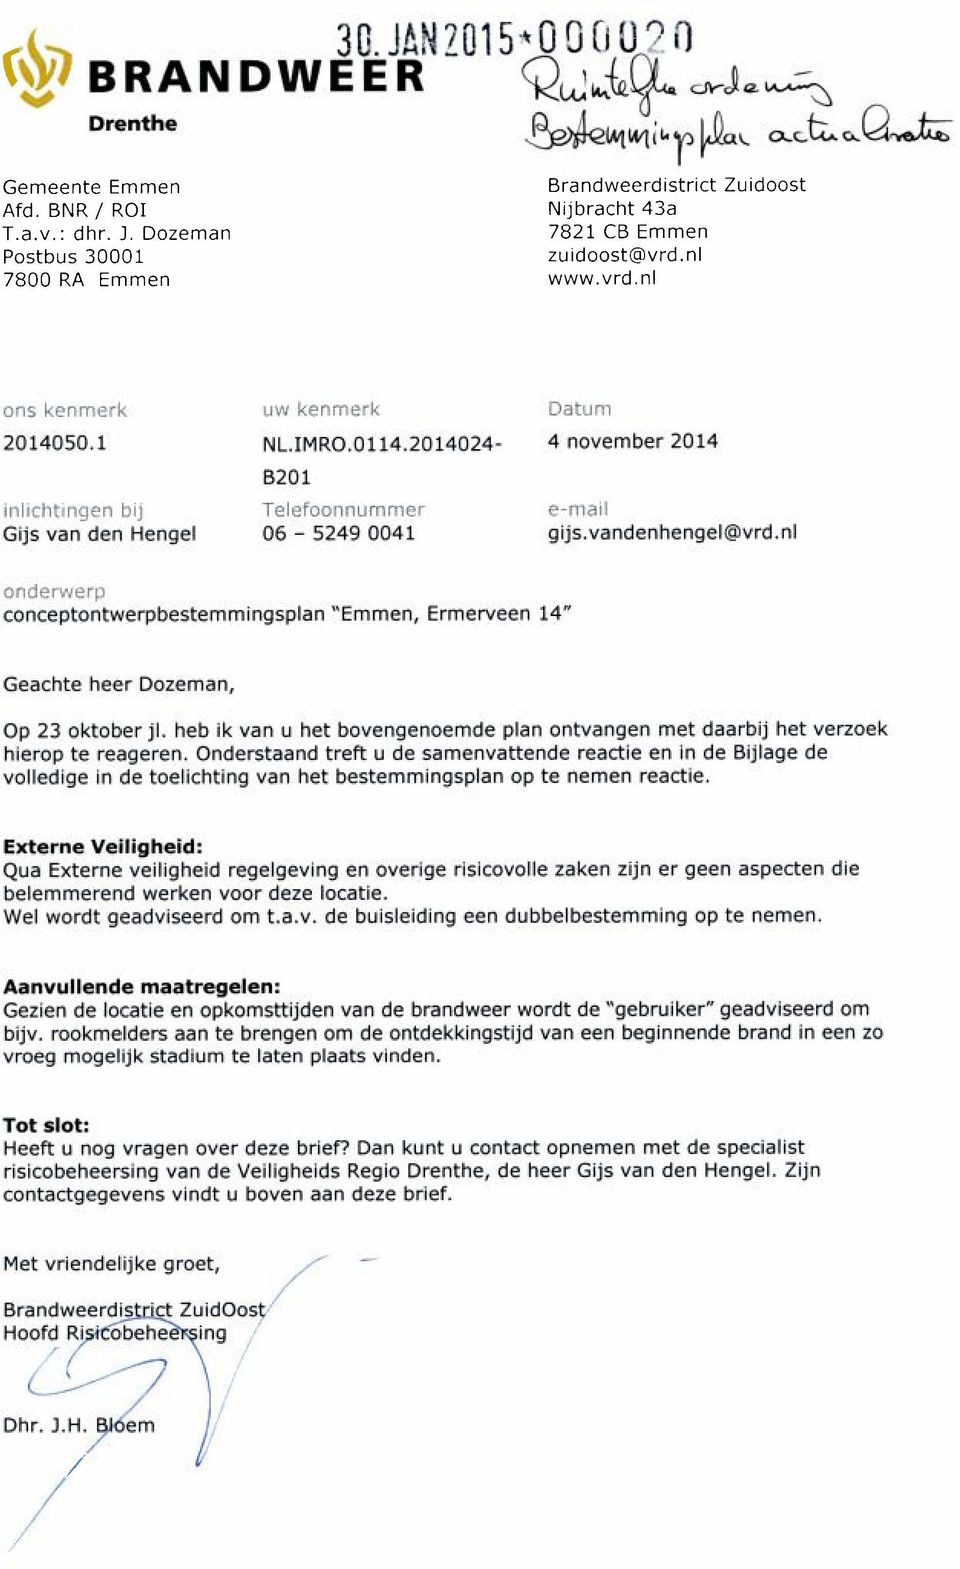 2014024-4 november 2014 B201 iflhicflti bij Telefoonnummer e-nlak Gijs van den Hengel 06 5249 0041 gijs.vandenhengel@vrd.